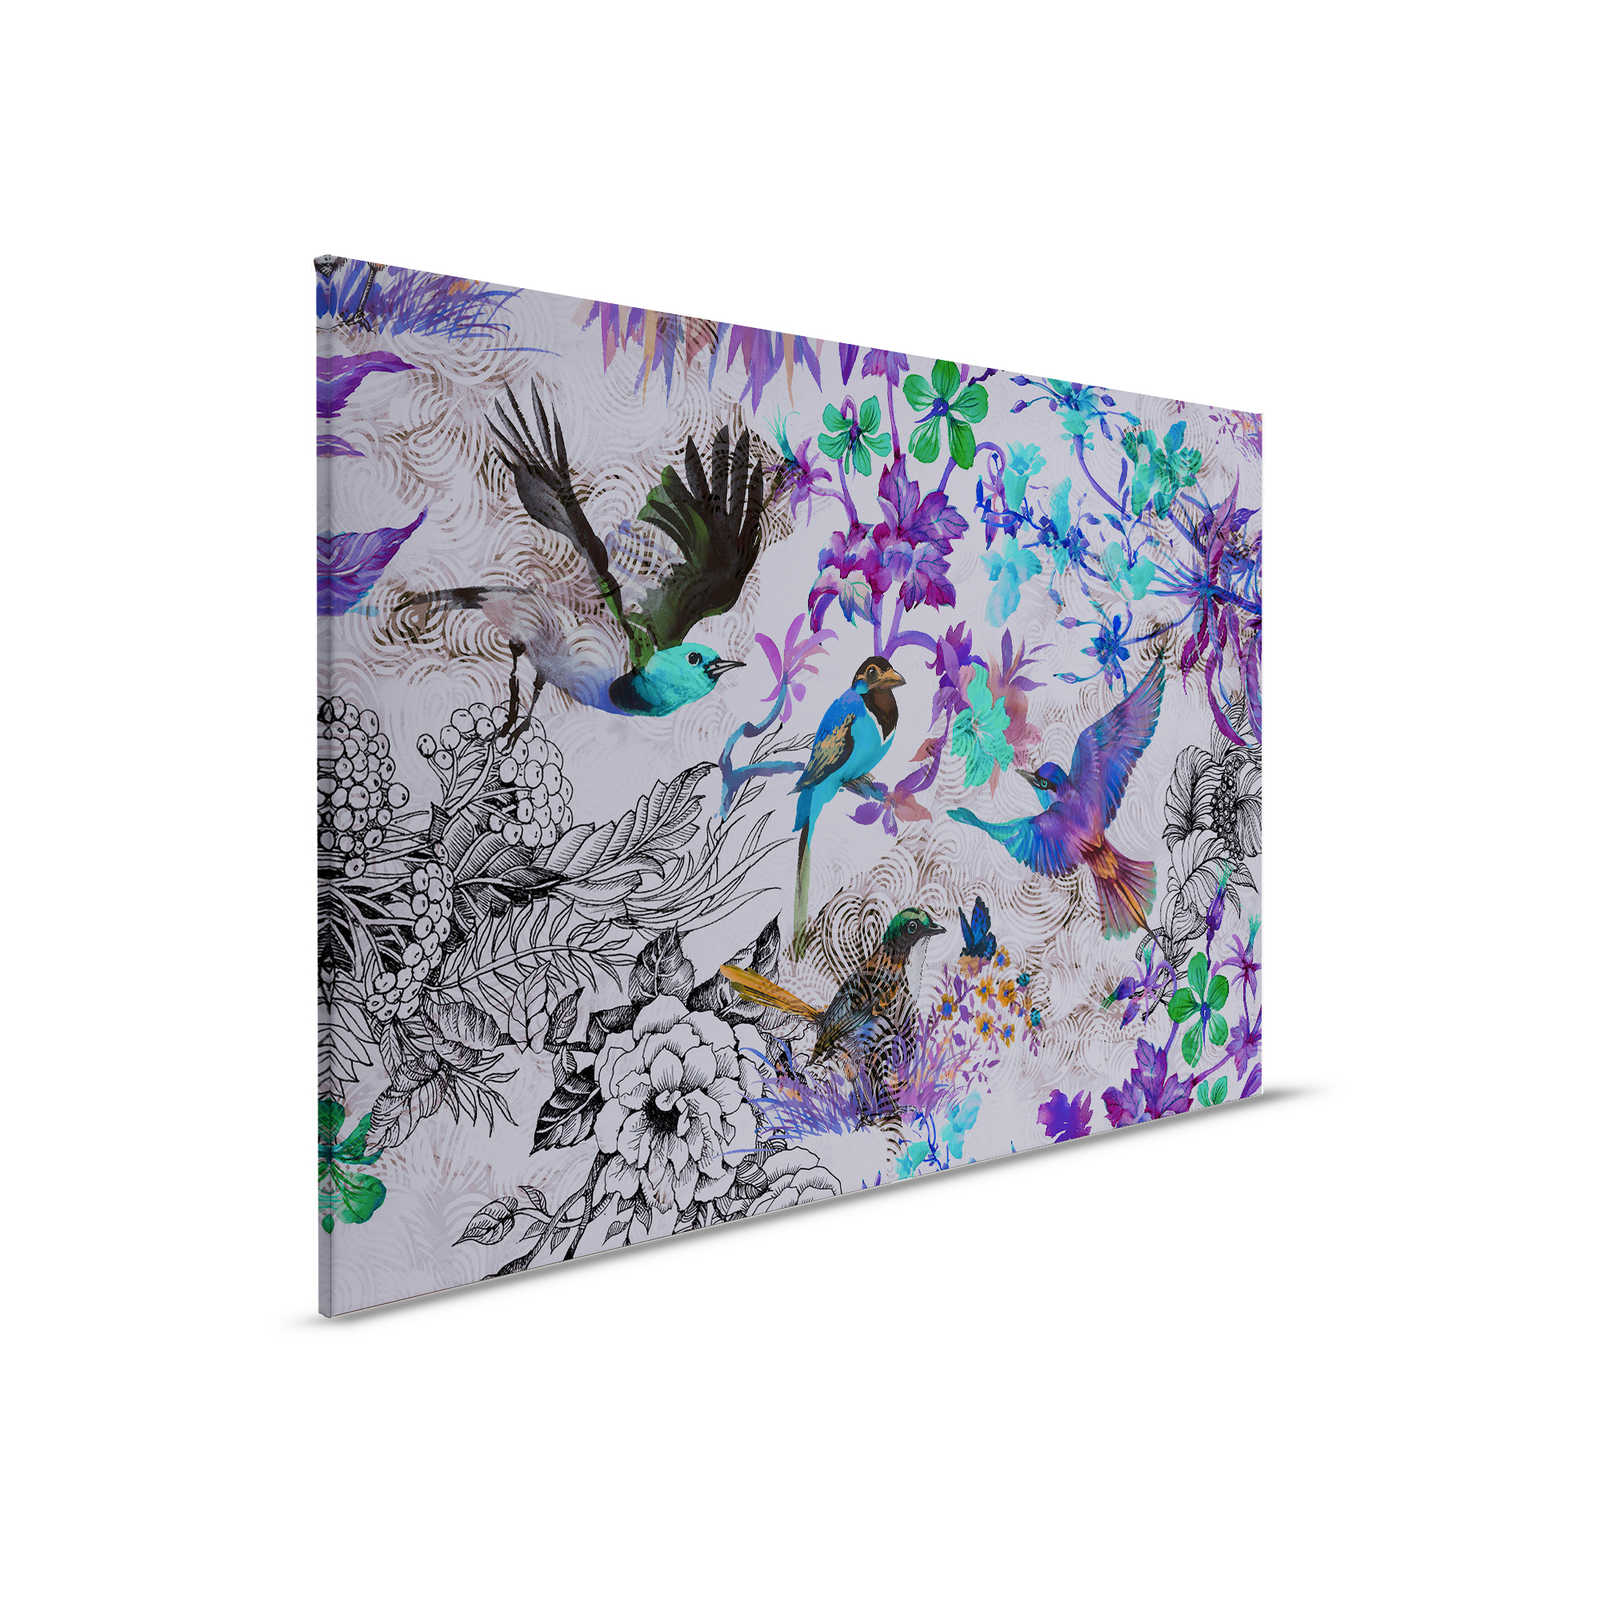 Violettes Leinwandbild mit Blumen & Vögeln – 0,90 m x 0,60 m
